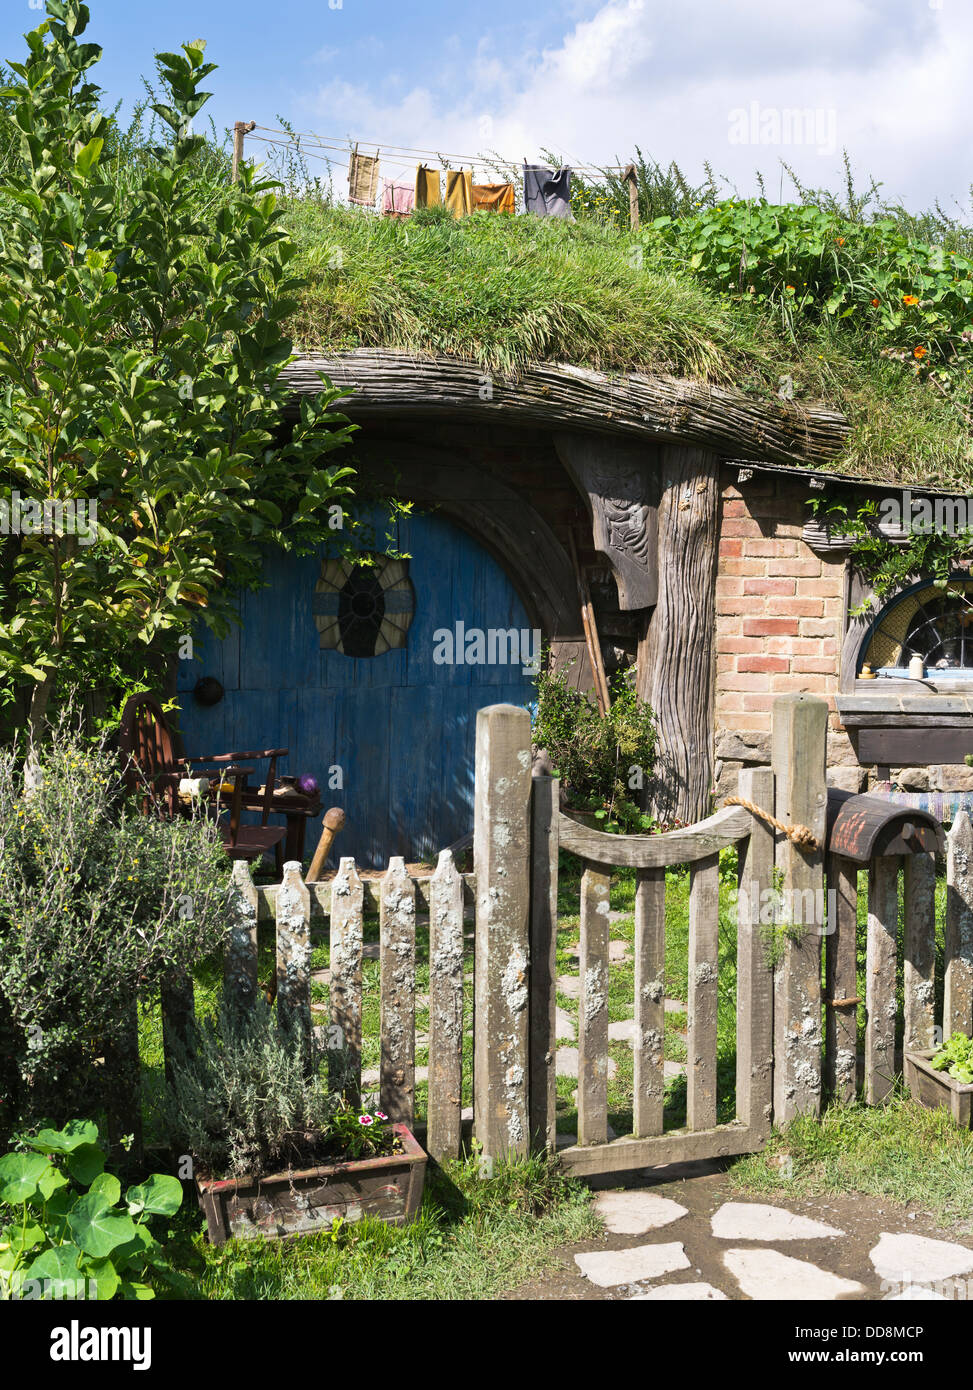 Dh Signore degli Anelli HOBBITON NUOVA ZELANDA Hobbit porta cottage del set di un film sito film Signore degli Anelli hobbit film house Foto Stock